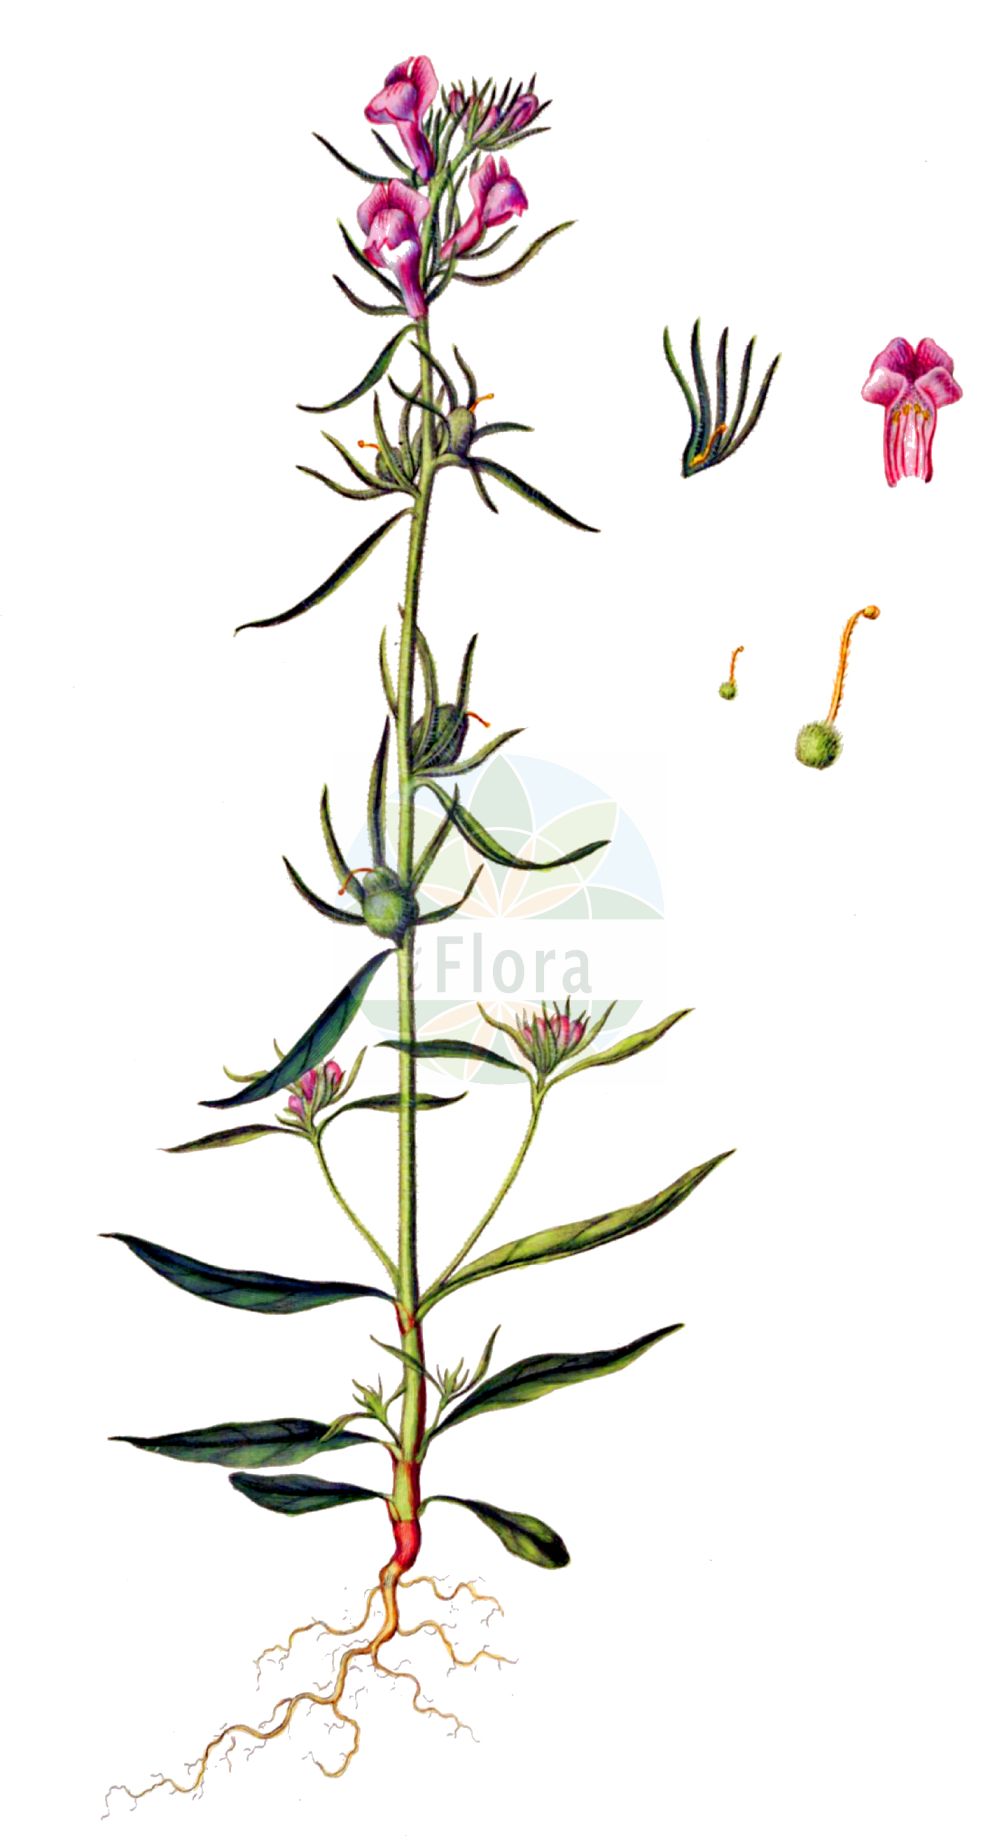 Historische Abbildung von Misopates orontium (Acker-Löwenmaul - Weasel's-snout). Das Bild zeigt Blatt, Bluete, Frucht und Same. ---- Historical Drawing of Misopates orontium (Acker-Löwenmaul - Weasel's-snout). The image is showing leaf, flower, fruit and seed.(Misopates orontium,Acker-Löwenmaul,Weasel's-snout,Antirrhinum orontium,Misopates orontium,Acker-Loewenmaul,Katzenmaul,Weasel's-snout,Calf's-snout,Linearleaf Snapdragon,Corn Snapdragon,Lesser Snapdragon,Linear-leaved Snapdragon,Wild Antirrhinum,Misopates,Katzenmaul,Snapdragon,Plantaginaceae,Wegerichgewächse,Plantain family,Blatt,Bluete,Frucht,Same,leaf,flower,fruit,seed,Oeder (1761-1883))